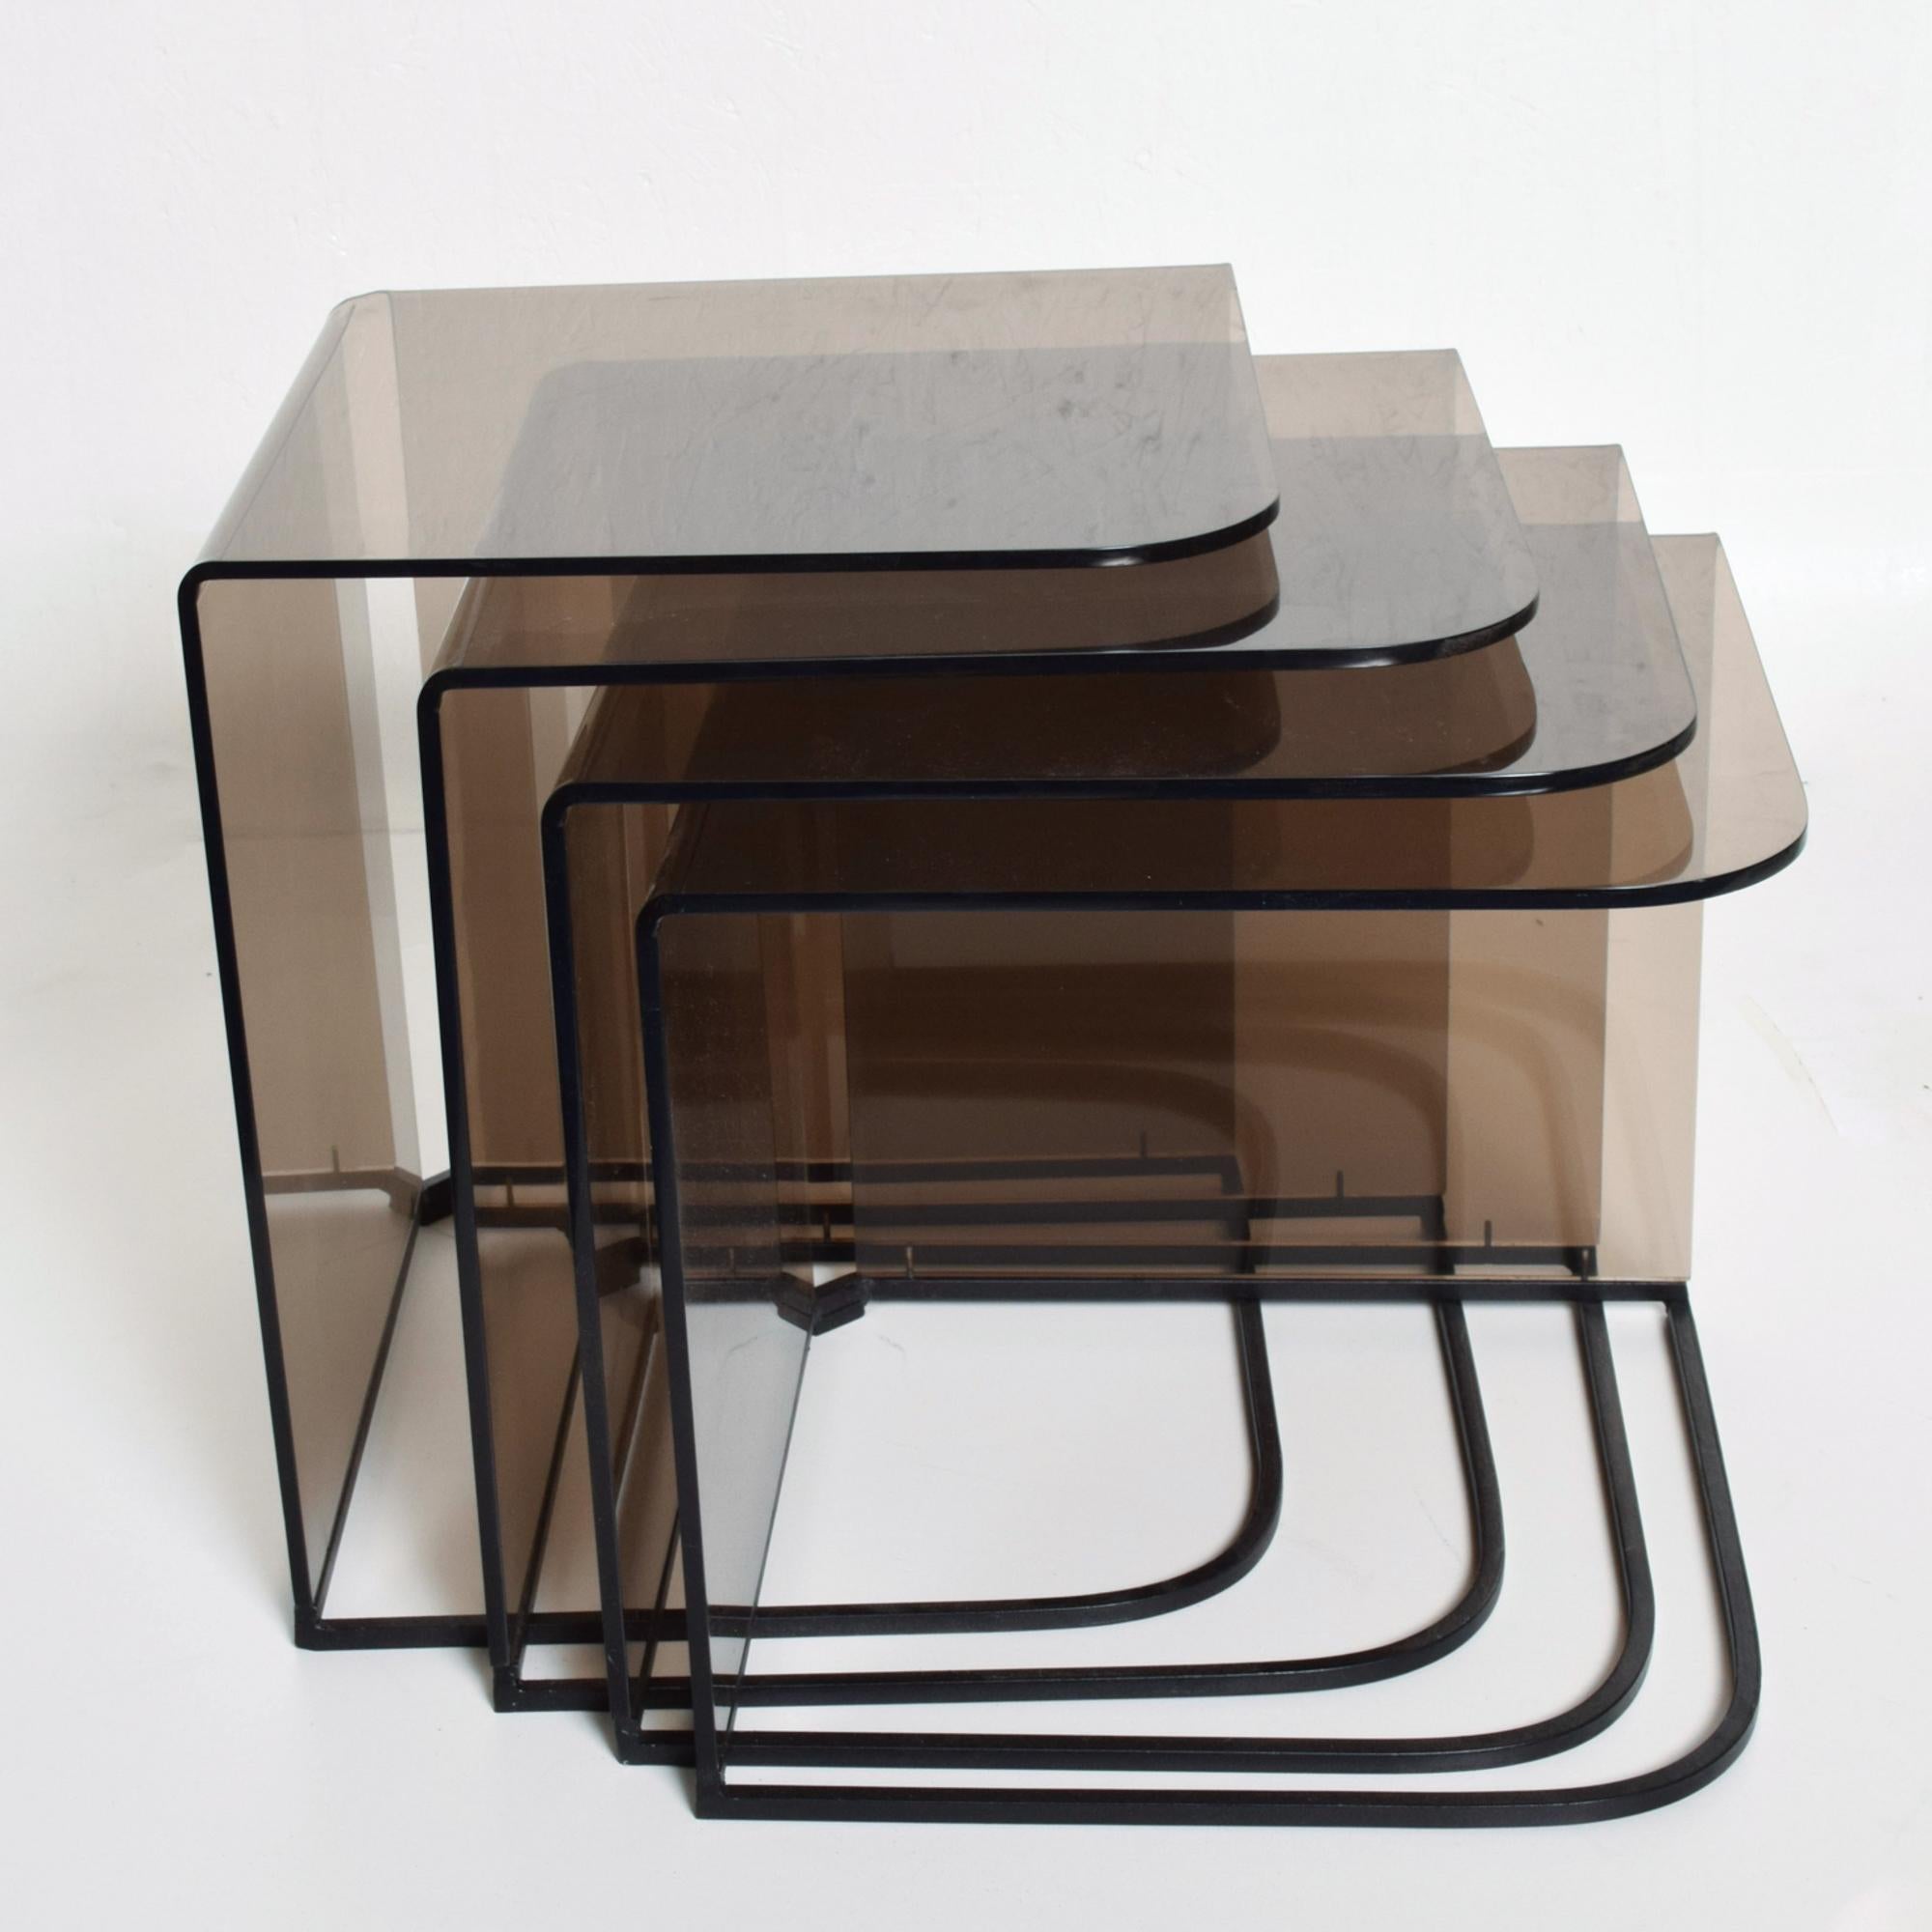 1970er Jahre Satz von vier (4) Nesting Tables Satin Black Metal Iron Rahmen mit Smokey Gray Lucite Plexiglas.
Hergestellt in den USA in den 1970er Jahren. Keine Herstellerangaben vorhanden.
Charles Hollis Jones zugeschrieben.
Größte 18 H x 15,75 x